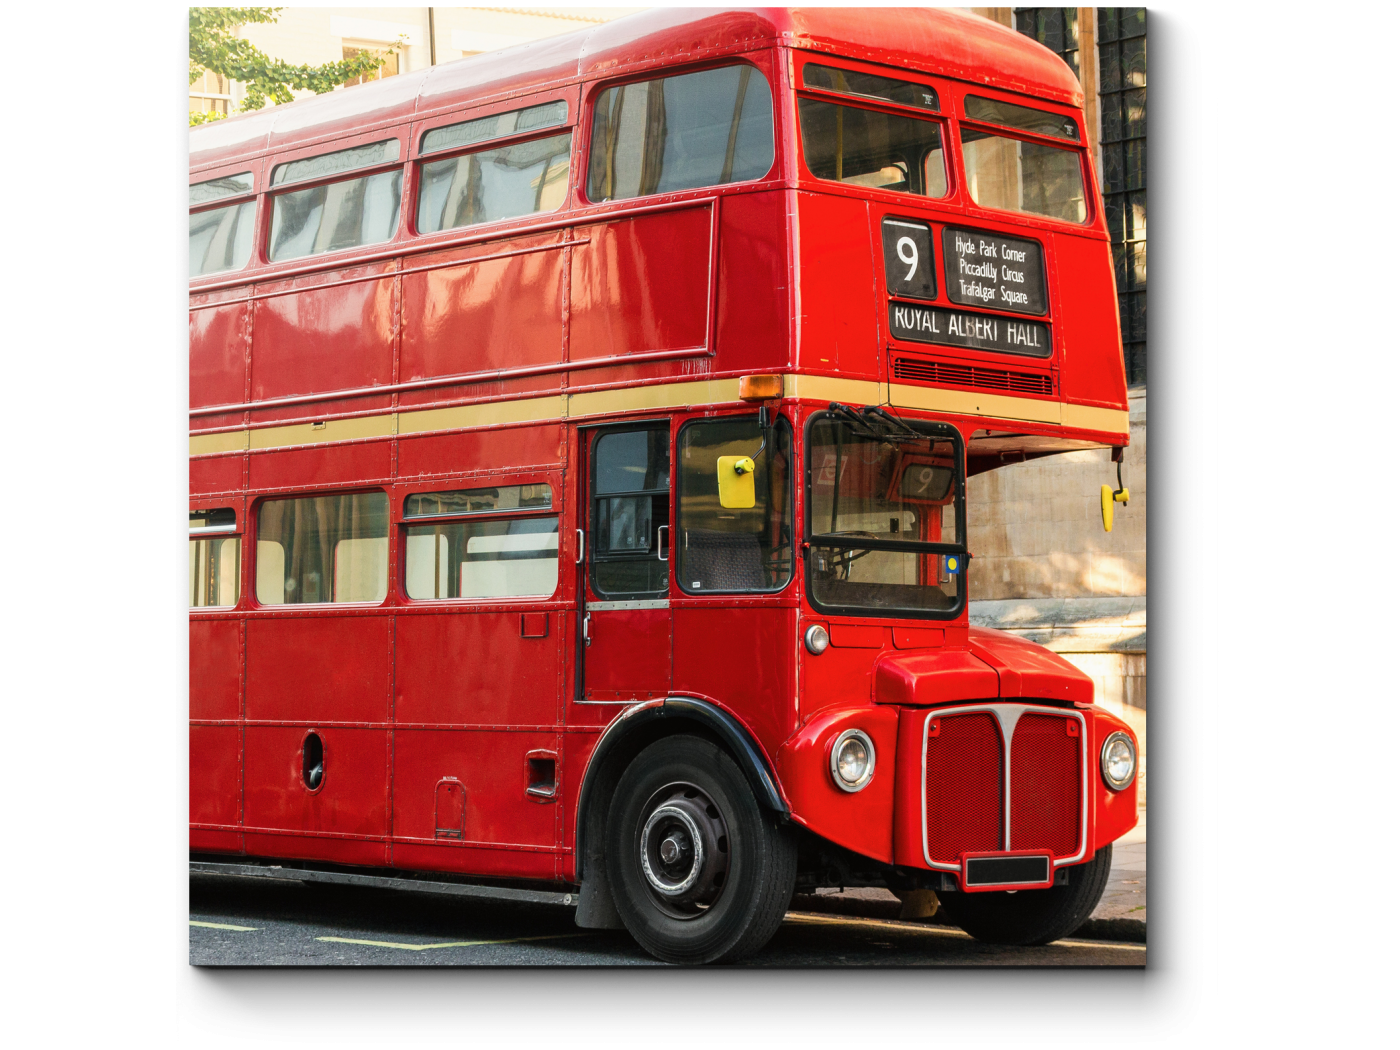 1400 1050. Автобус AEC Routemaster. Рутмастер символ Лондона. Красные двухэтажные автобусы - символ Лондона. Картина Лондон красный автобус.